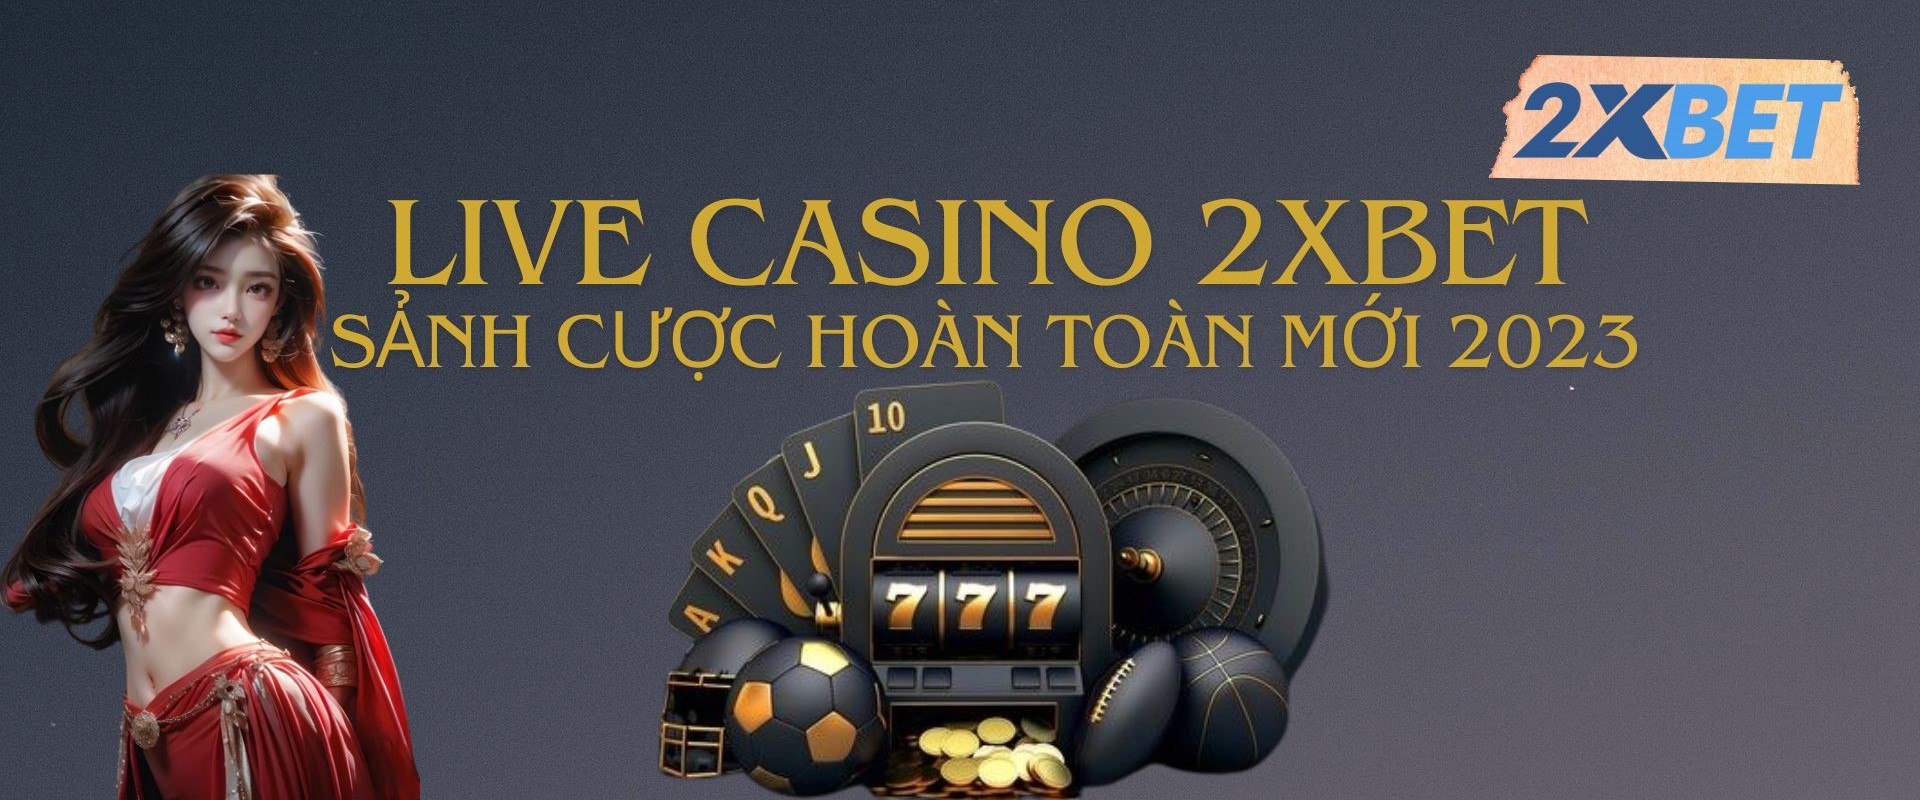 Sòng cược live casino tại nhà cái 2XBET